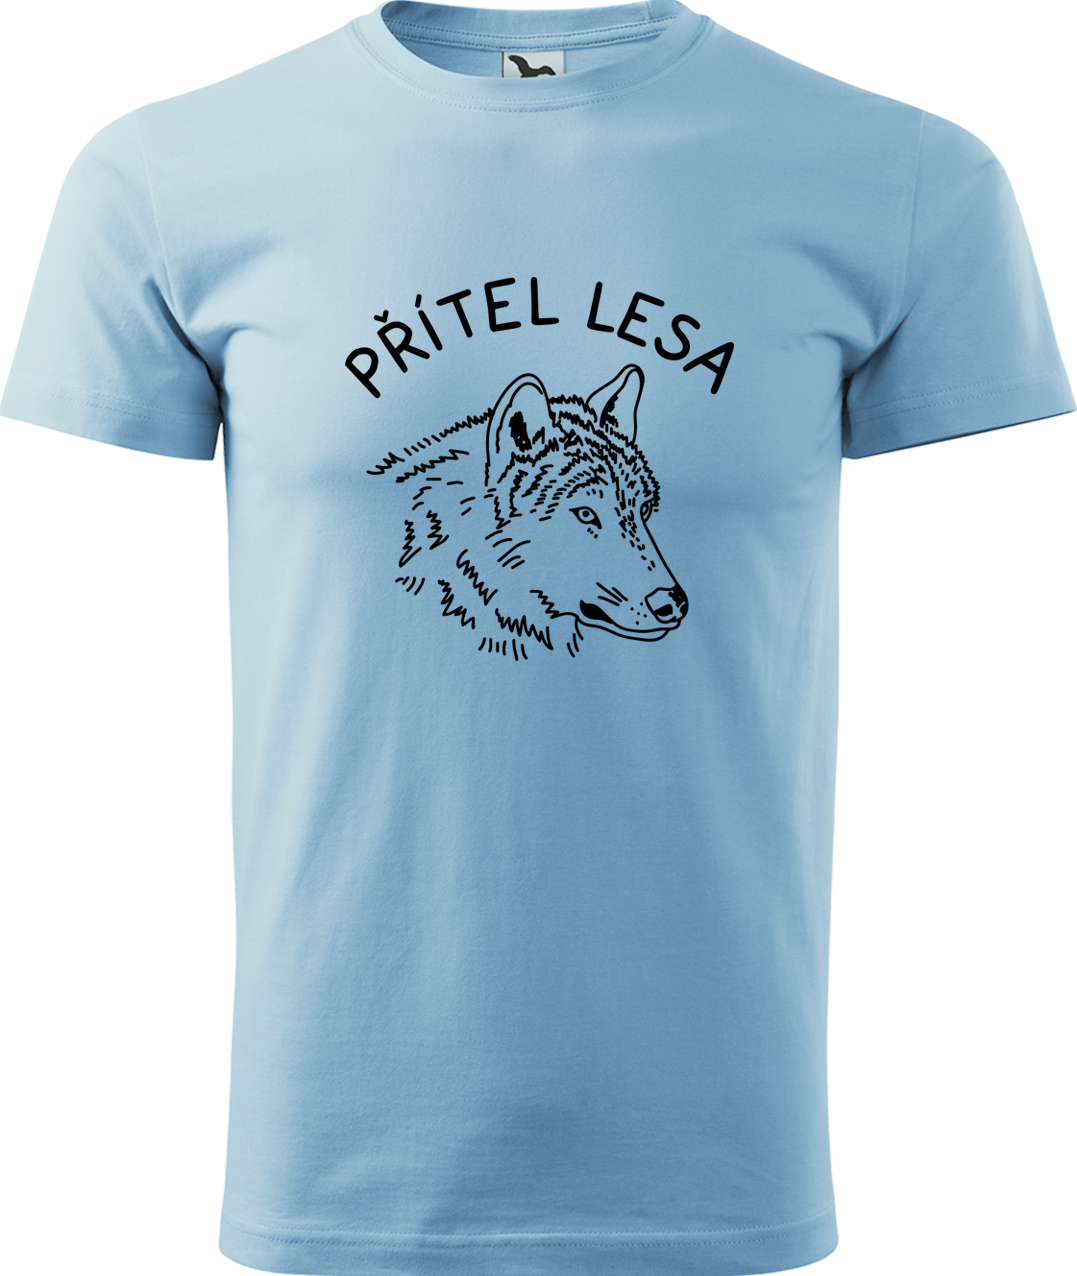 Pánské tričko s vlkem - Přítel lesa Velikost: M, Barva: Nebesky modrá (15), Střih: pánský